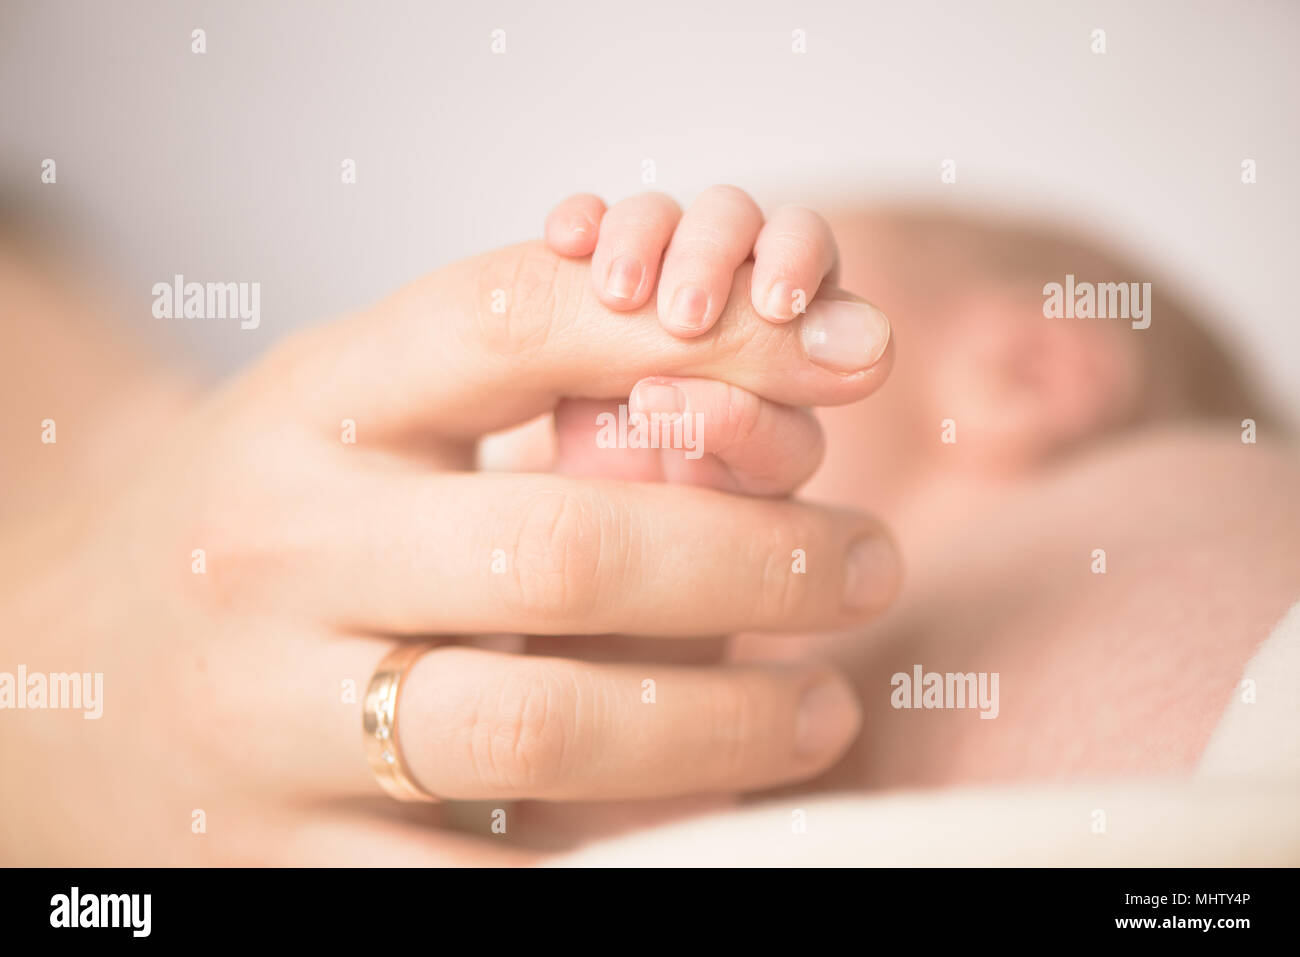 Femme main tenant la main de son nouveau-né. Maman avec son enfant. La maternité, la naissance, la famille concept. Copie de l'espace pour votre texte Banque D'Images